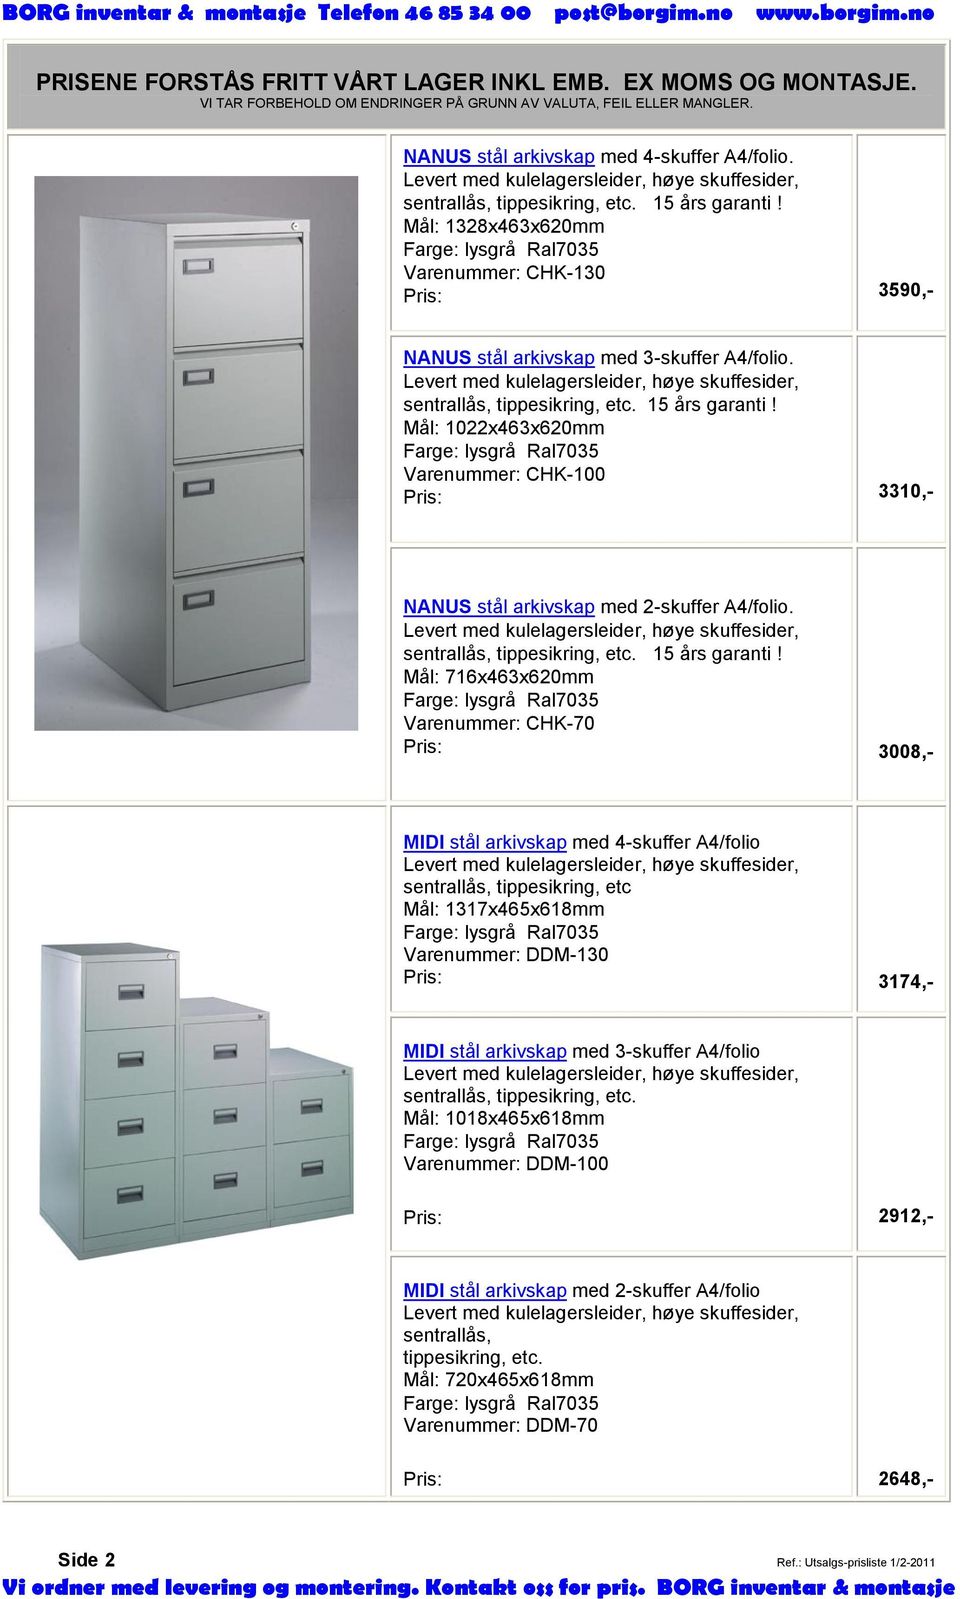 15 års garanti! Mål: 1022x463x620mm Farge: lysgrå Ral7035 Varenummer: CHK-100 Pris: 3310,- NANUS stål arkivskap med 2-skuffer A4/folio.